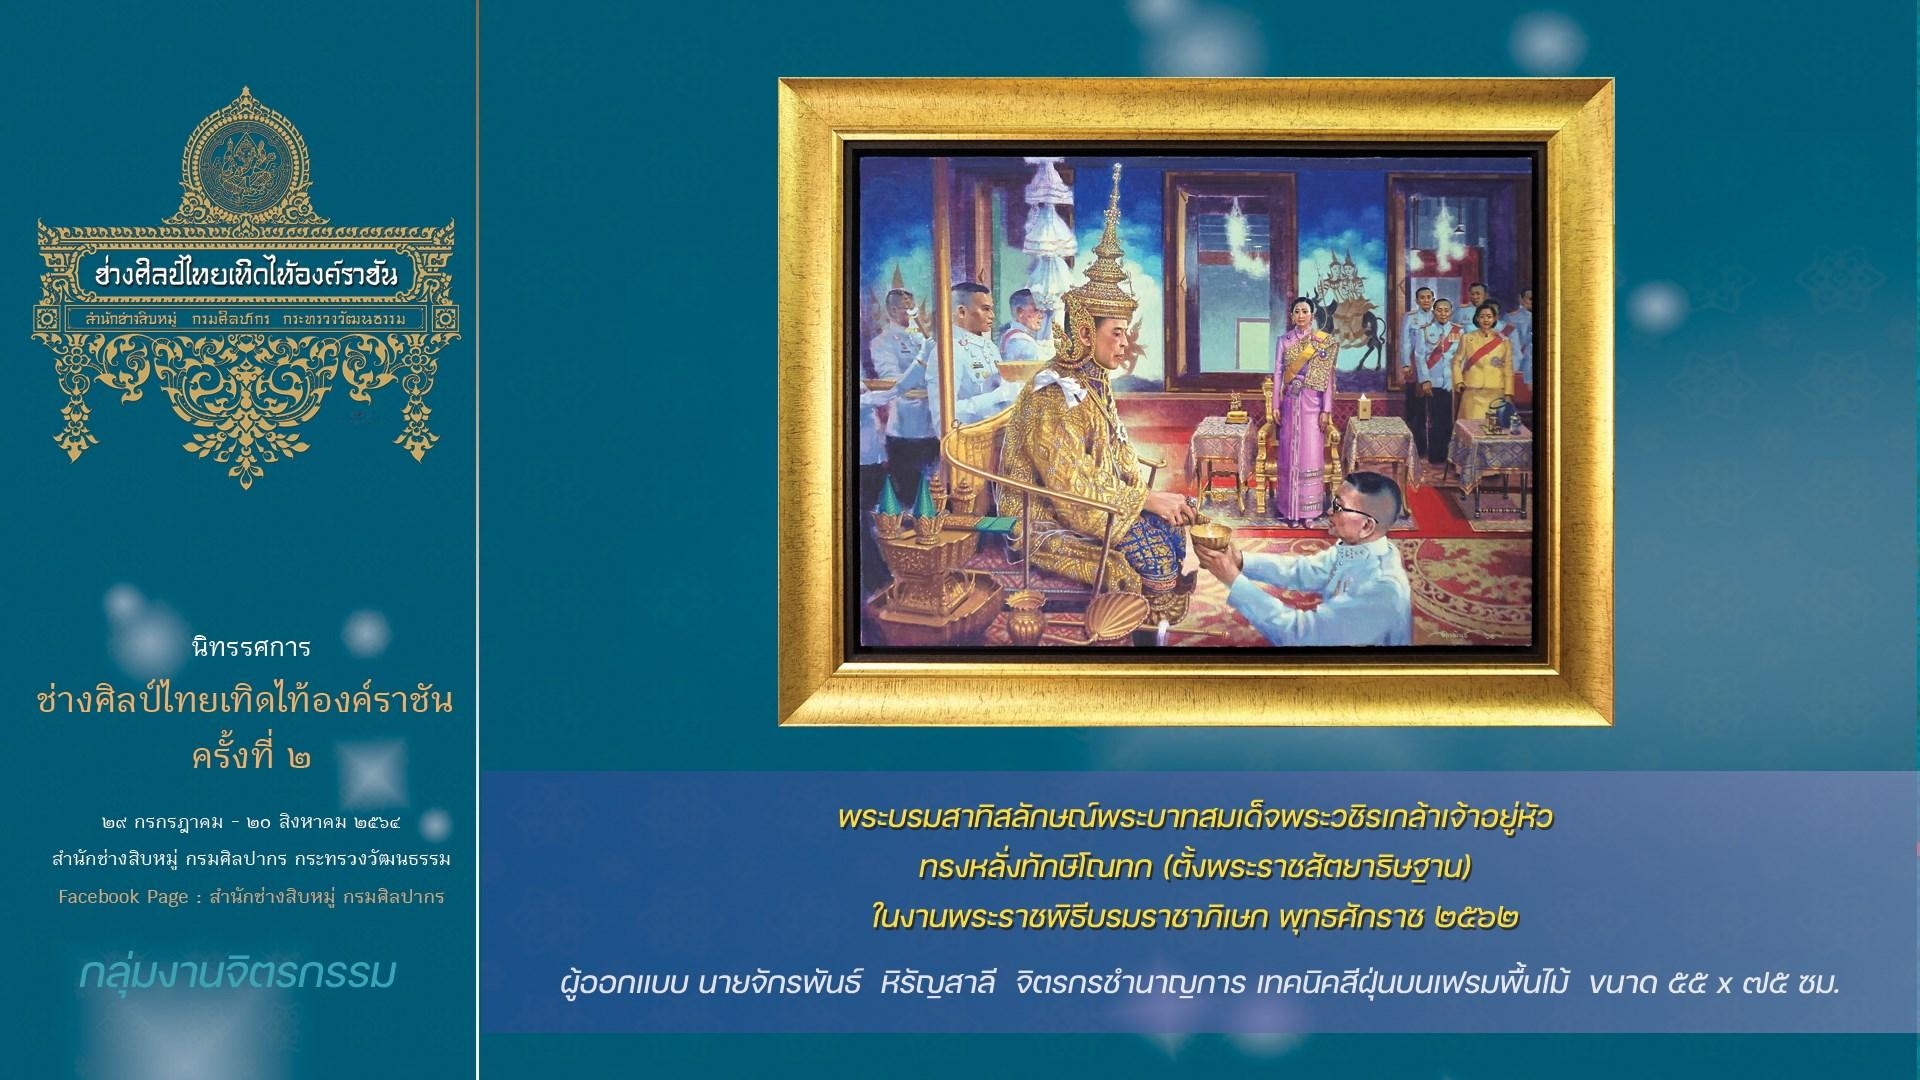 นิทรรศการ  ช่างศิลป์ไทย เทิดไท้องค์ราชัน  ครั้งที่ ๒